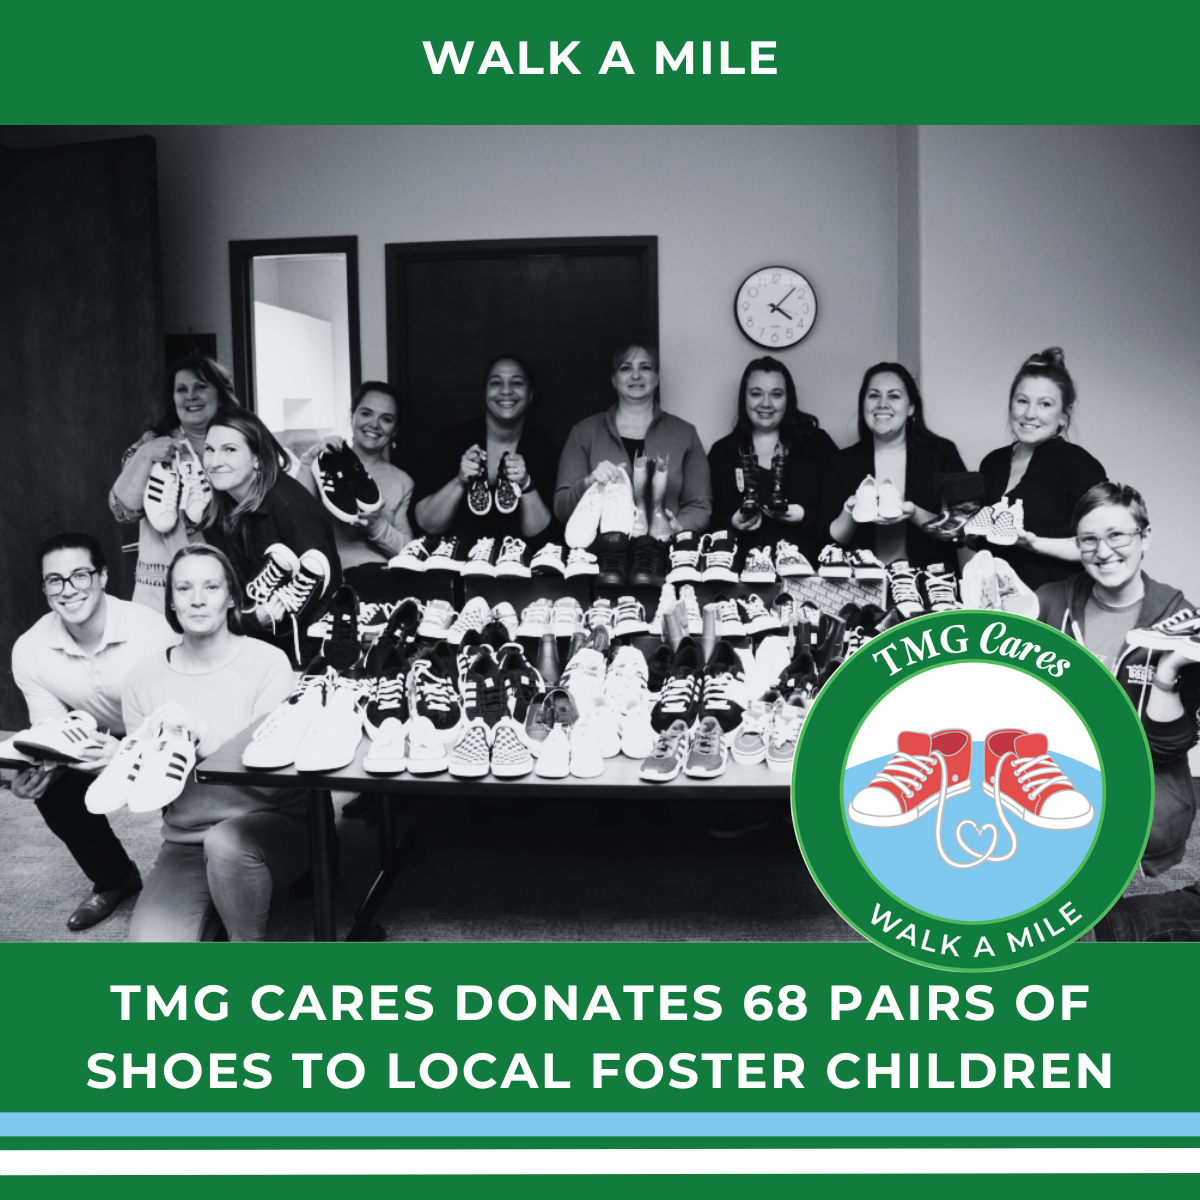 Walk a Mile donates shoes